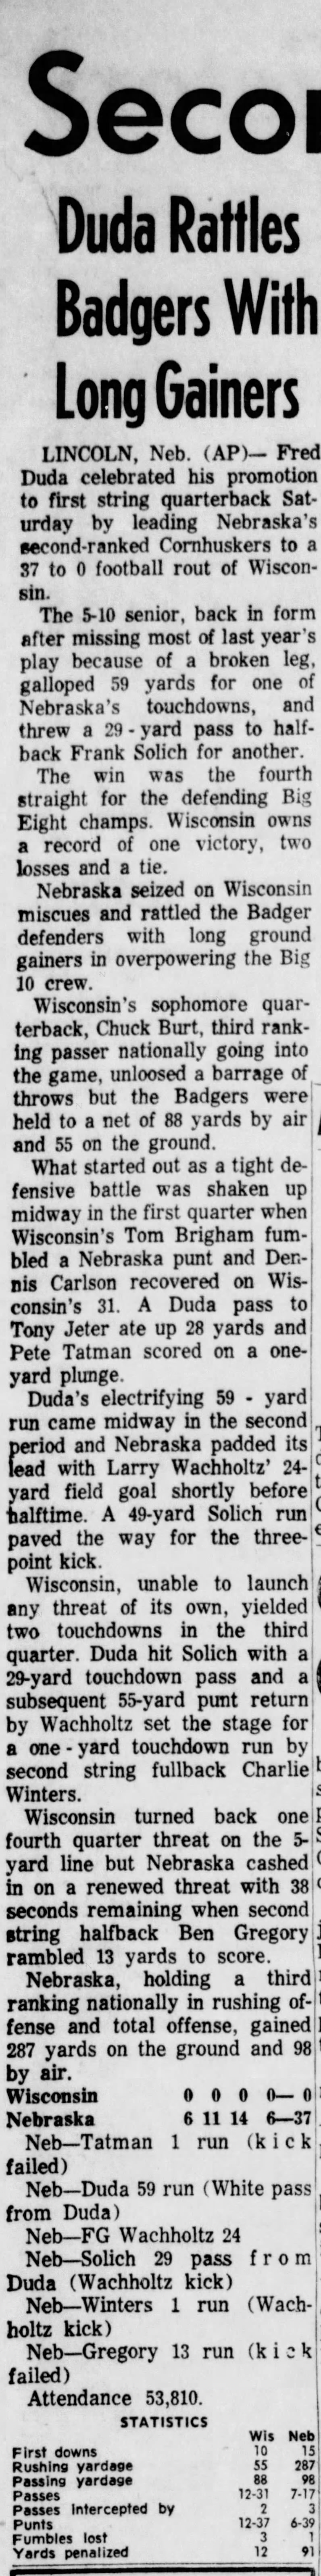 1965 Nebraska-Wisconsin football, AP